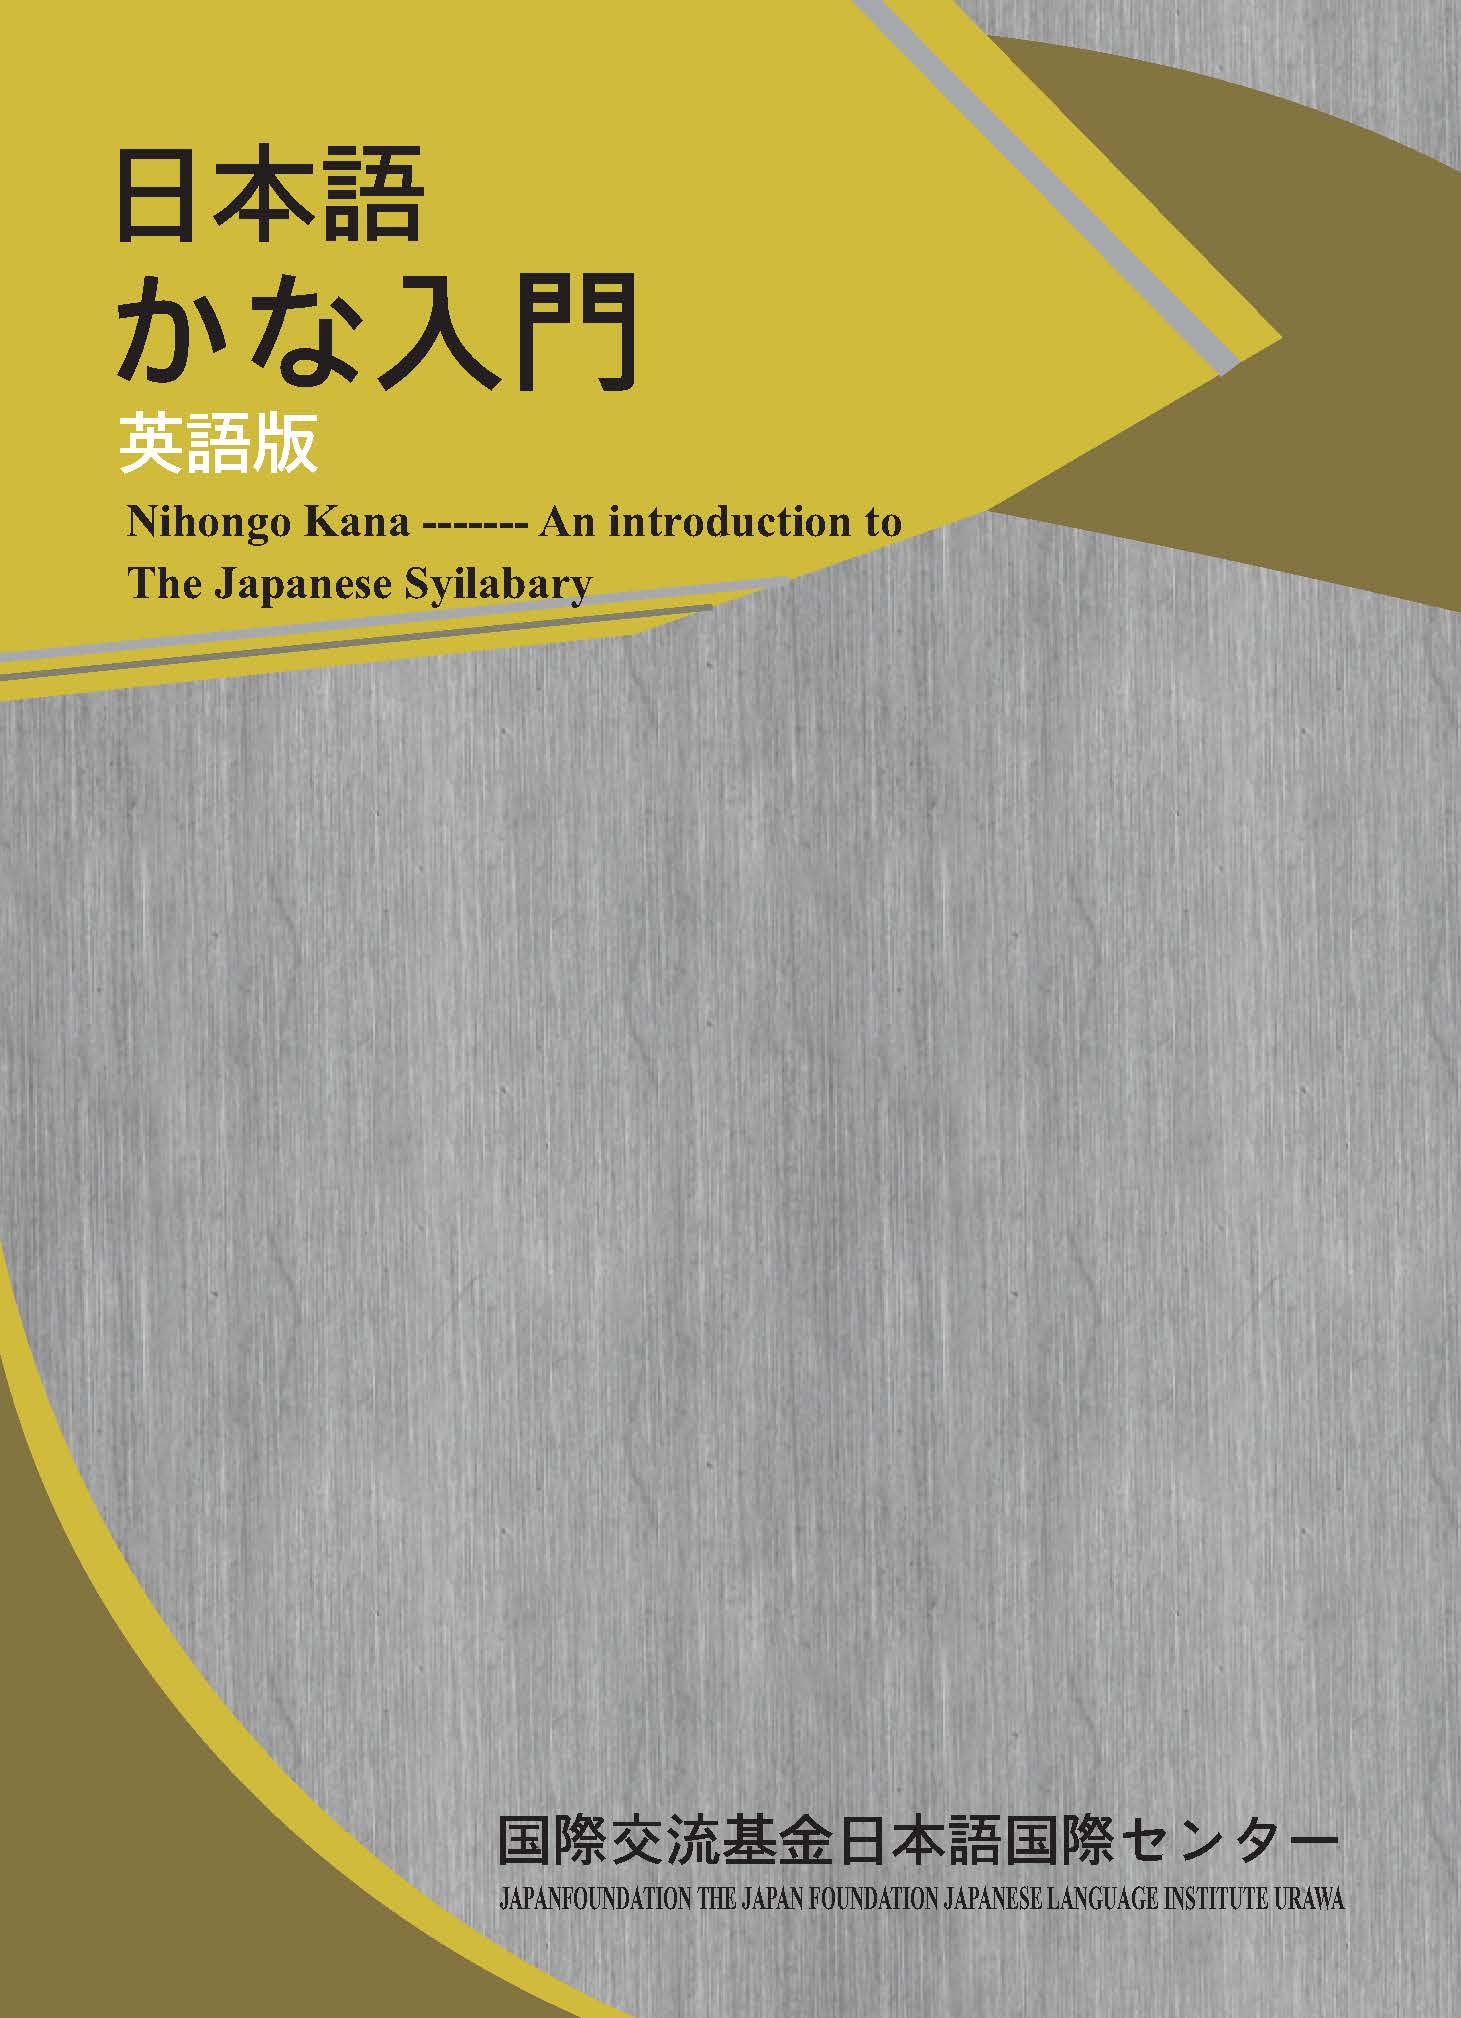 KMK Sách Học Tiếng Nhật Kana Nyumon (Nhập Môn Tiếng Nhật)